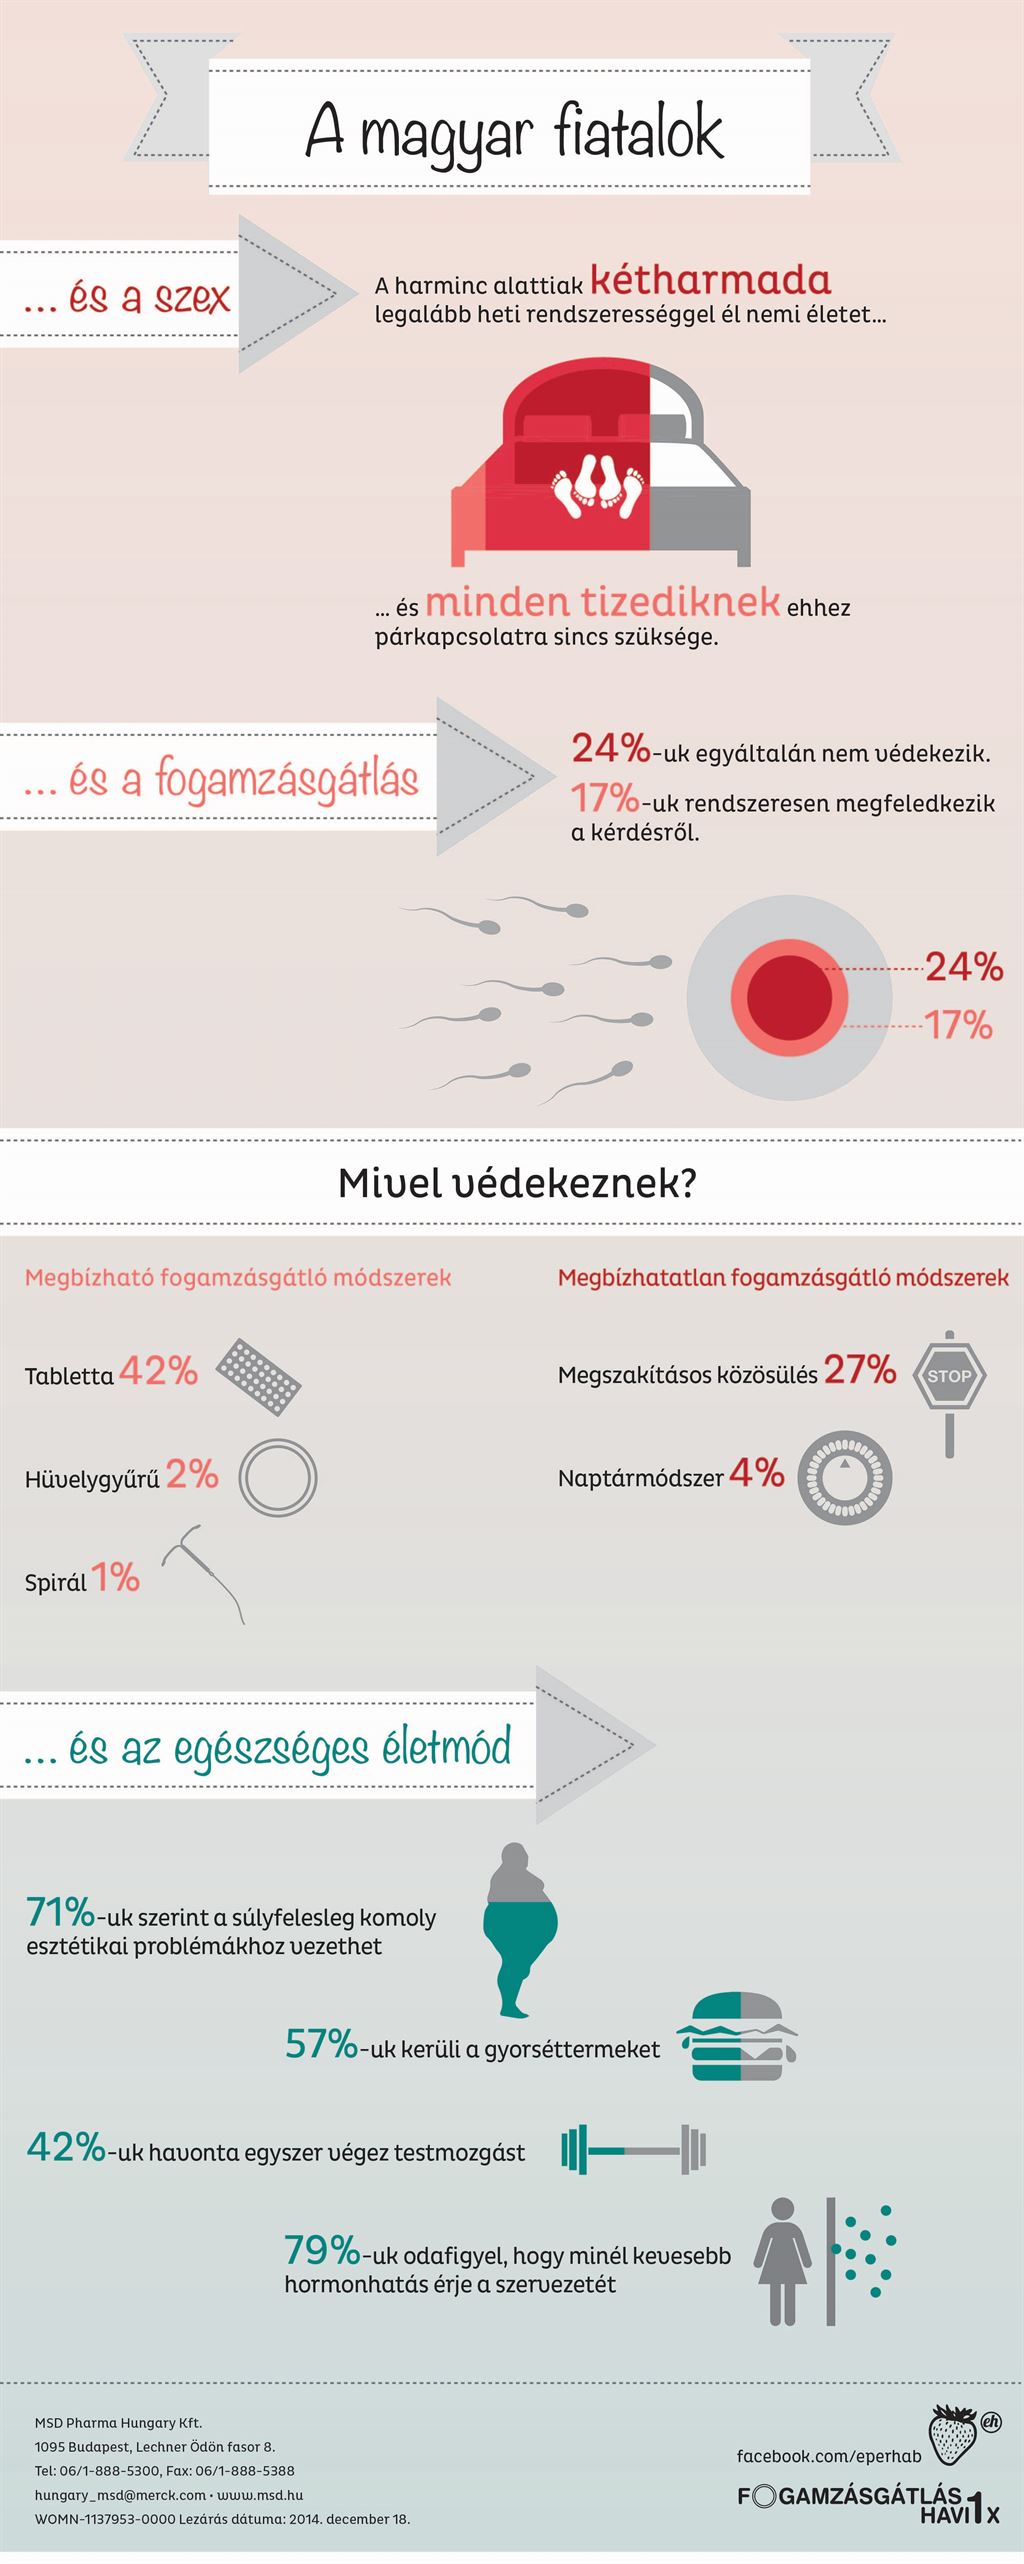 msd_fogamzasgatlas_szilveszter_infografika